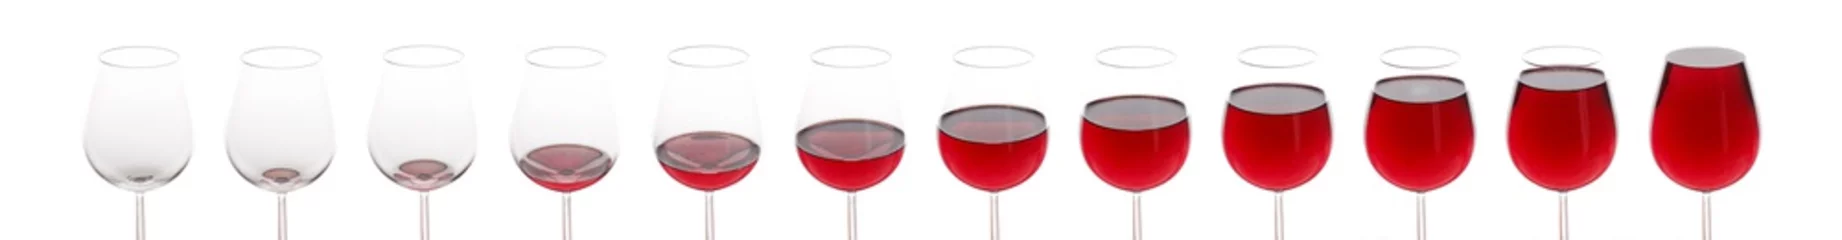 Fotobehang Ein leeres Glas wird gefüllt mit Rotwein - lange Collage © manushot